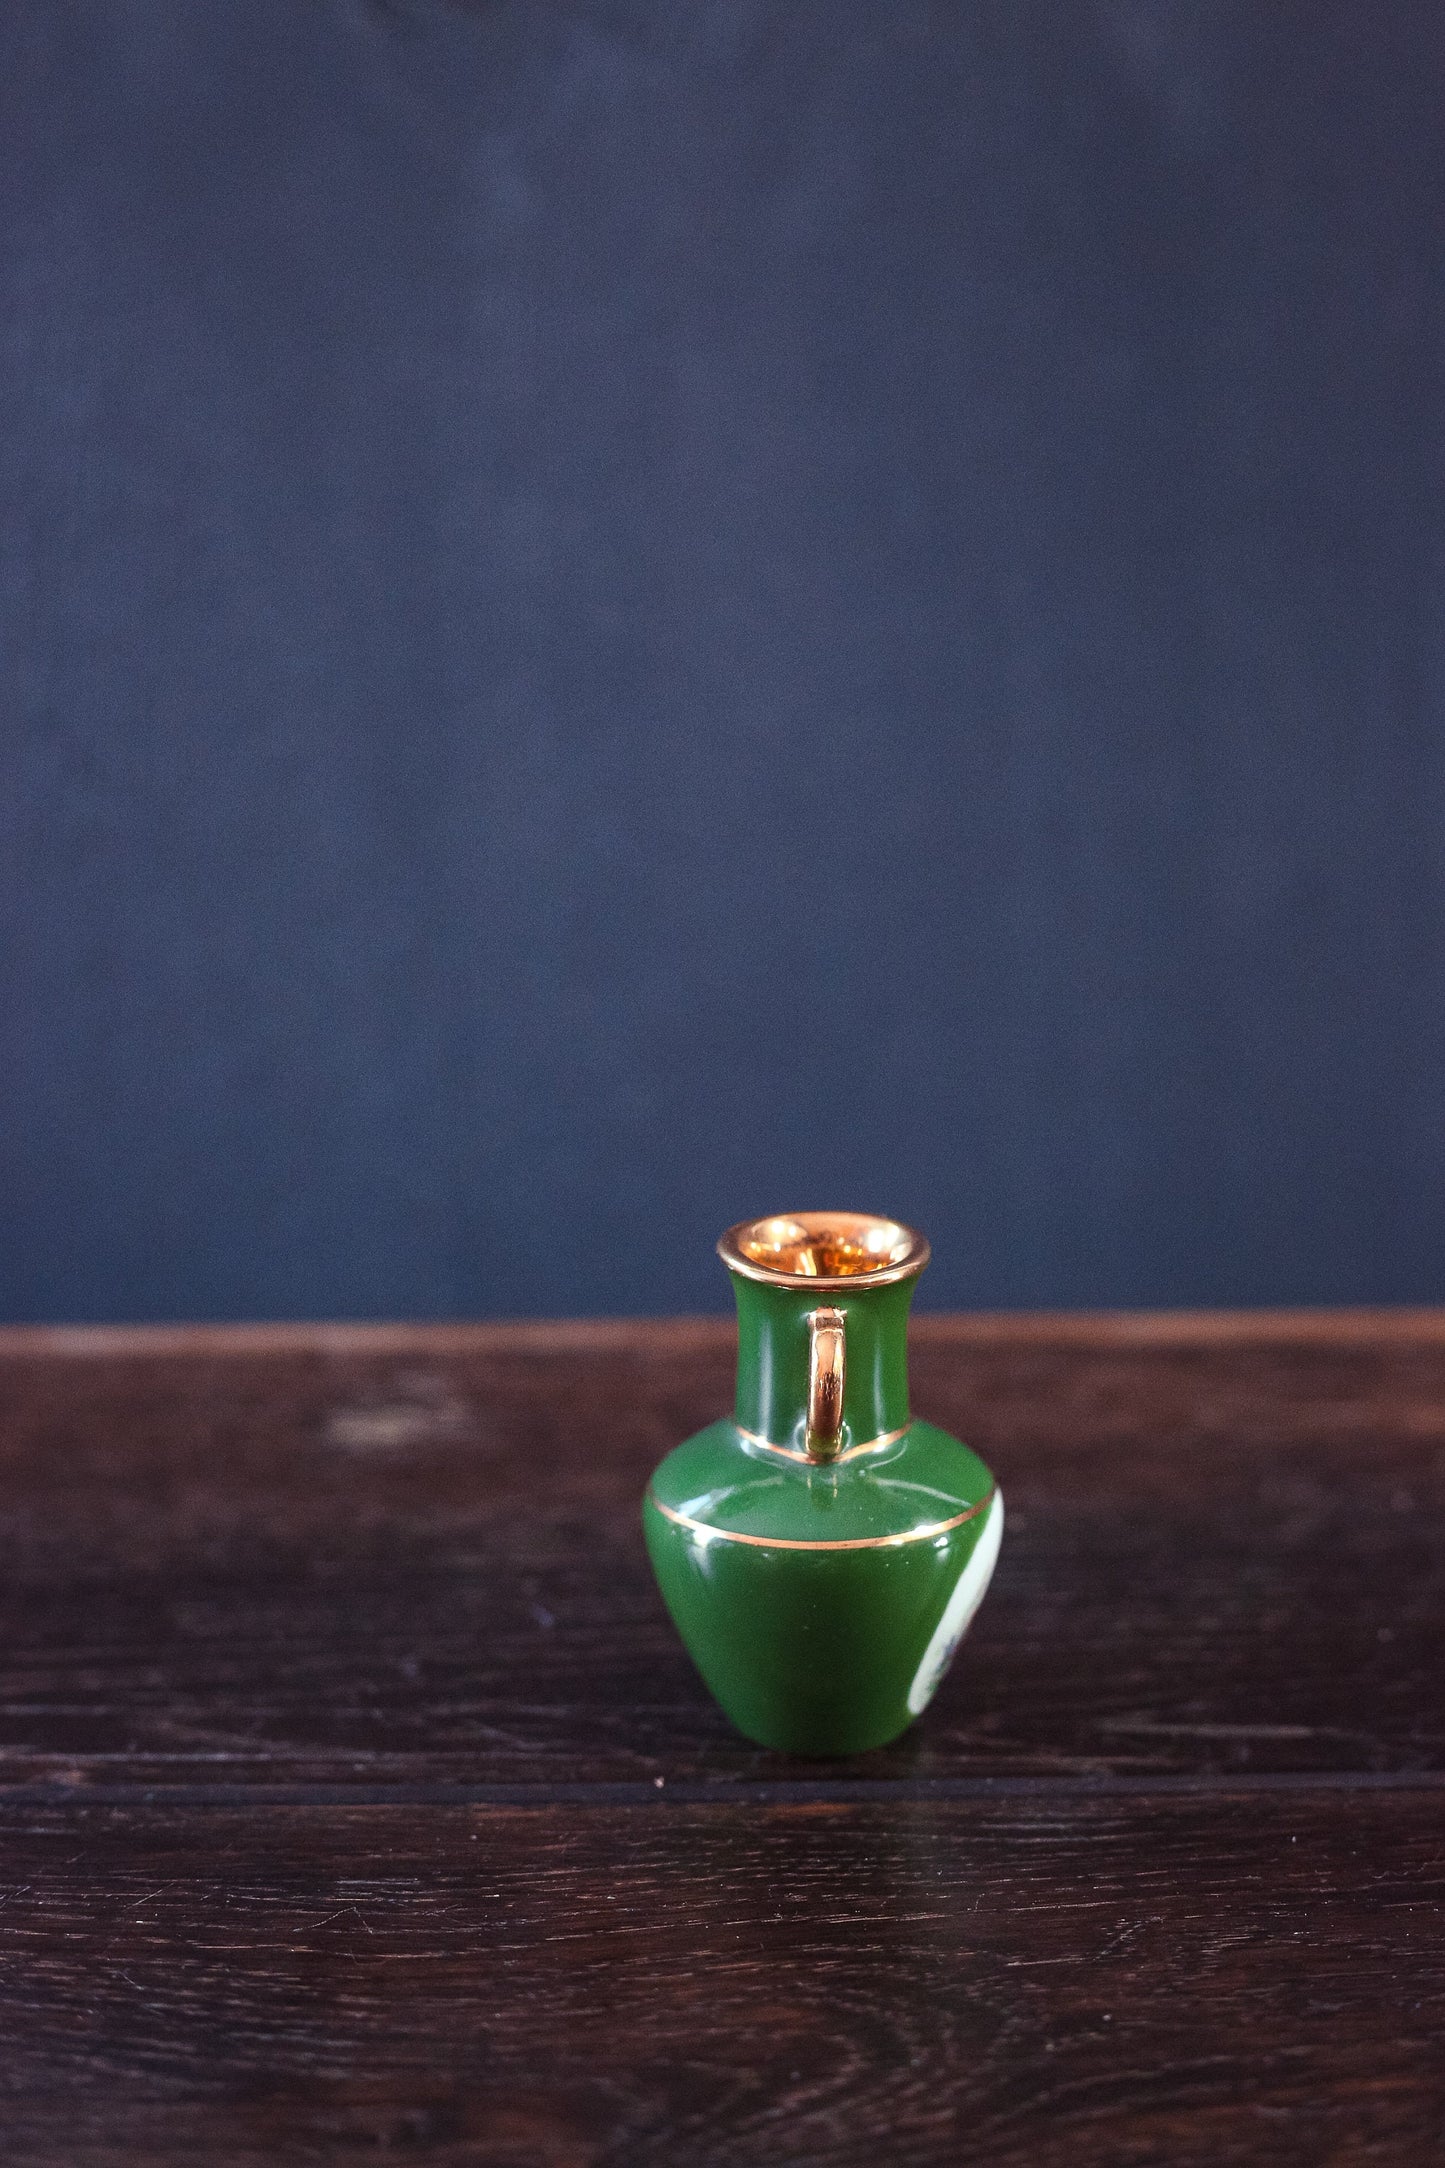 Mini Limoges Amphora Vase in Olive Green with Gilded Details - Antique Limoges France Miniature Fragonard Porcelain Vase